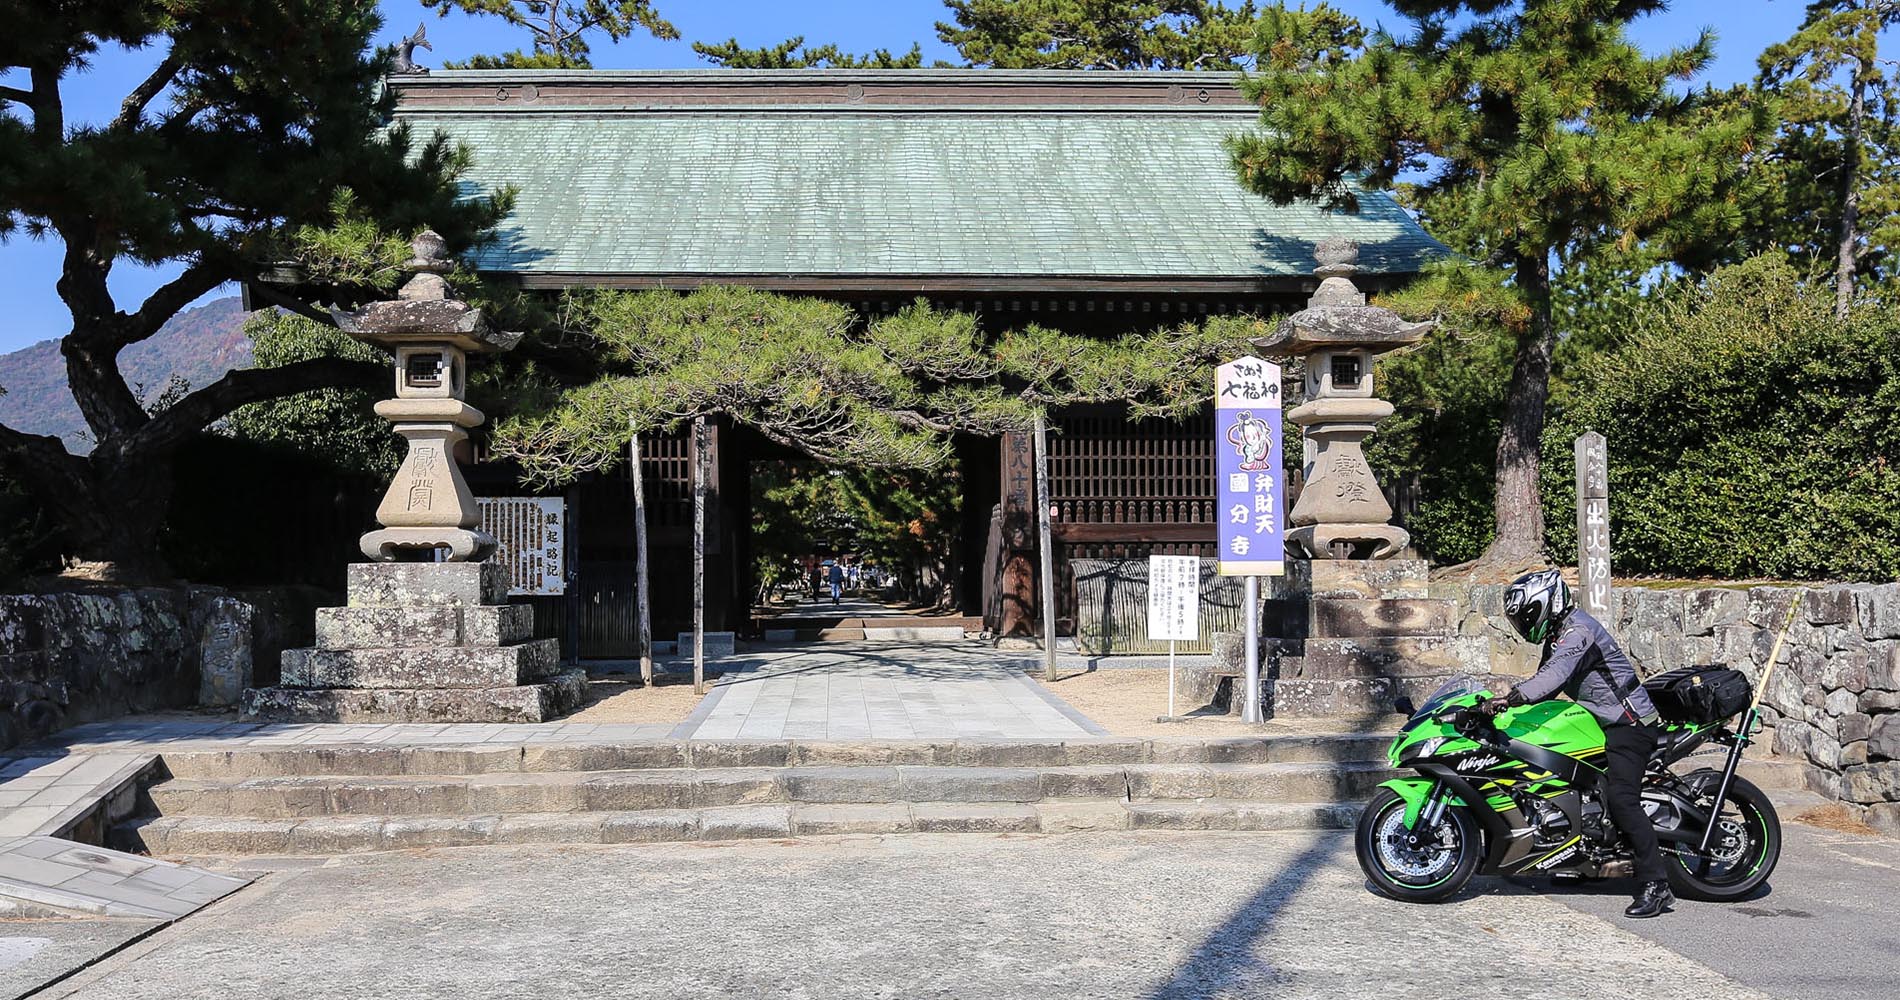 Entrée de Kokubunji (vous remarquerez le porte bâton de pèlerin sur la moto)